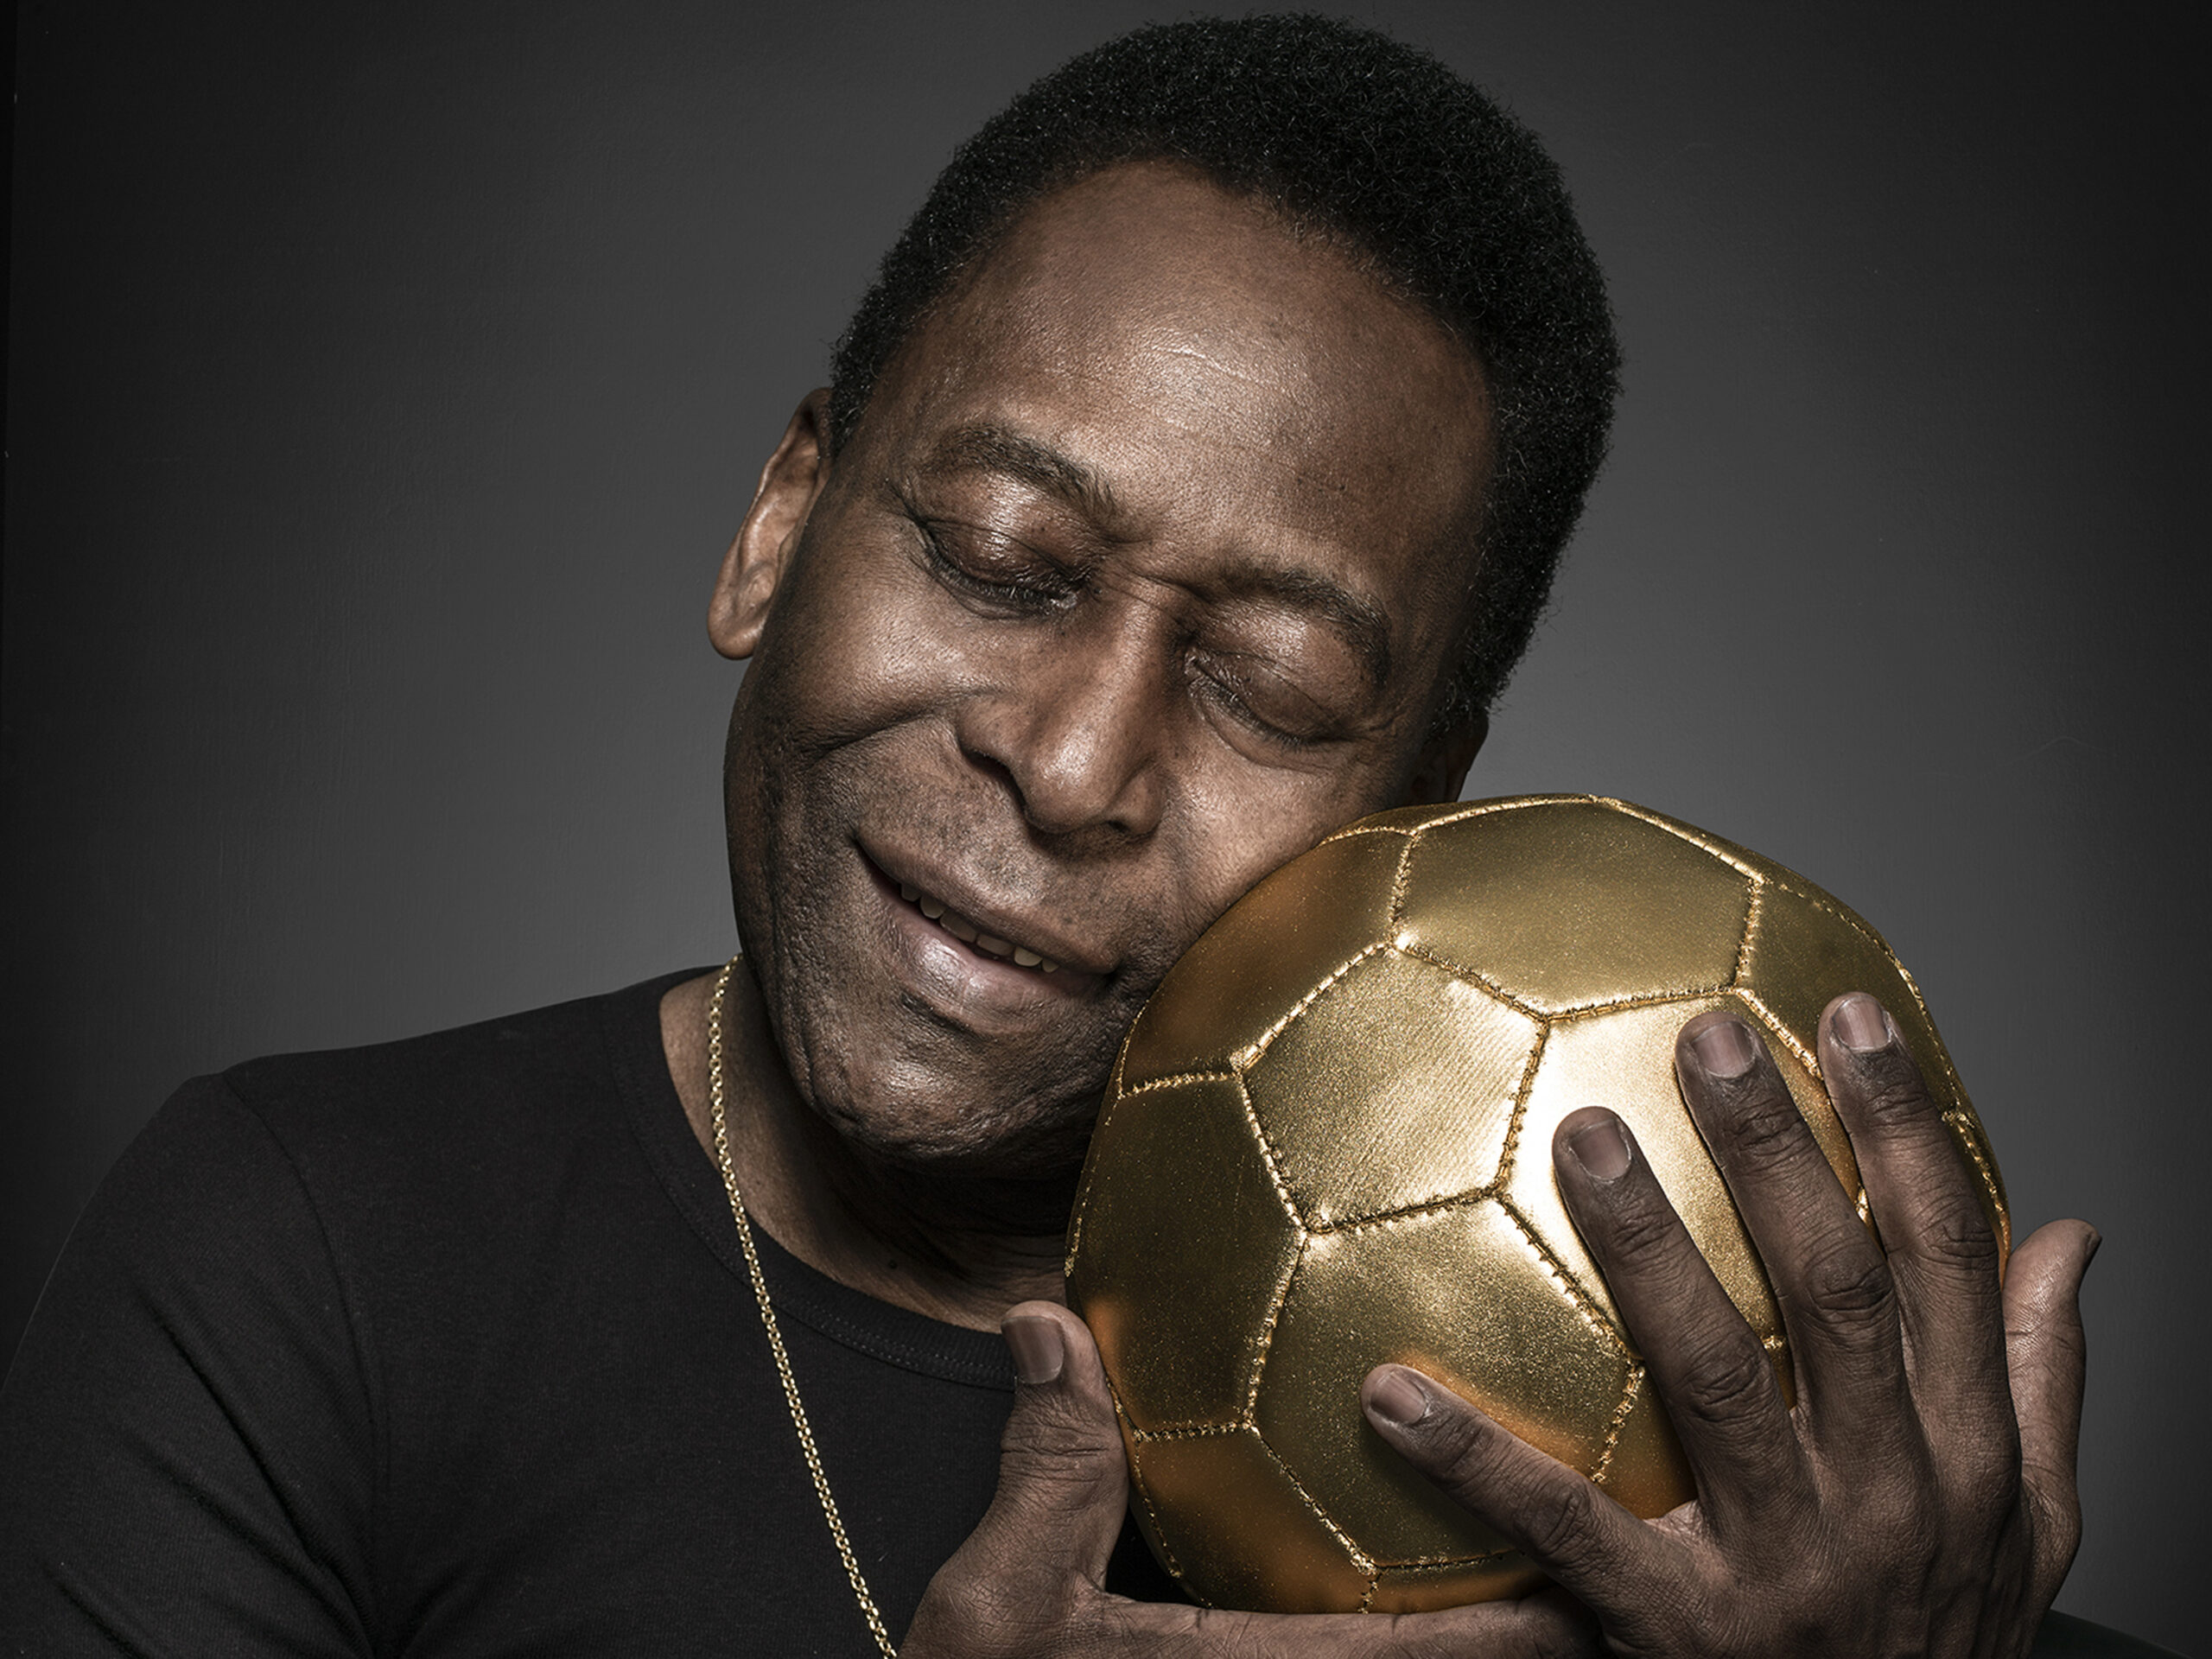 Fotos de Pelé em estúdio

Fotos: Paulo Vitale